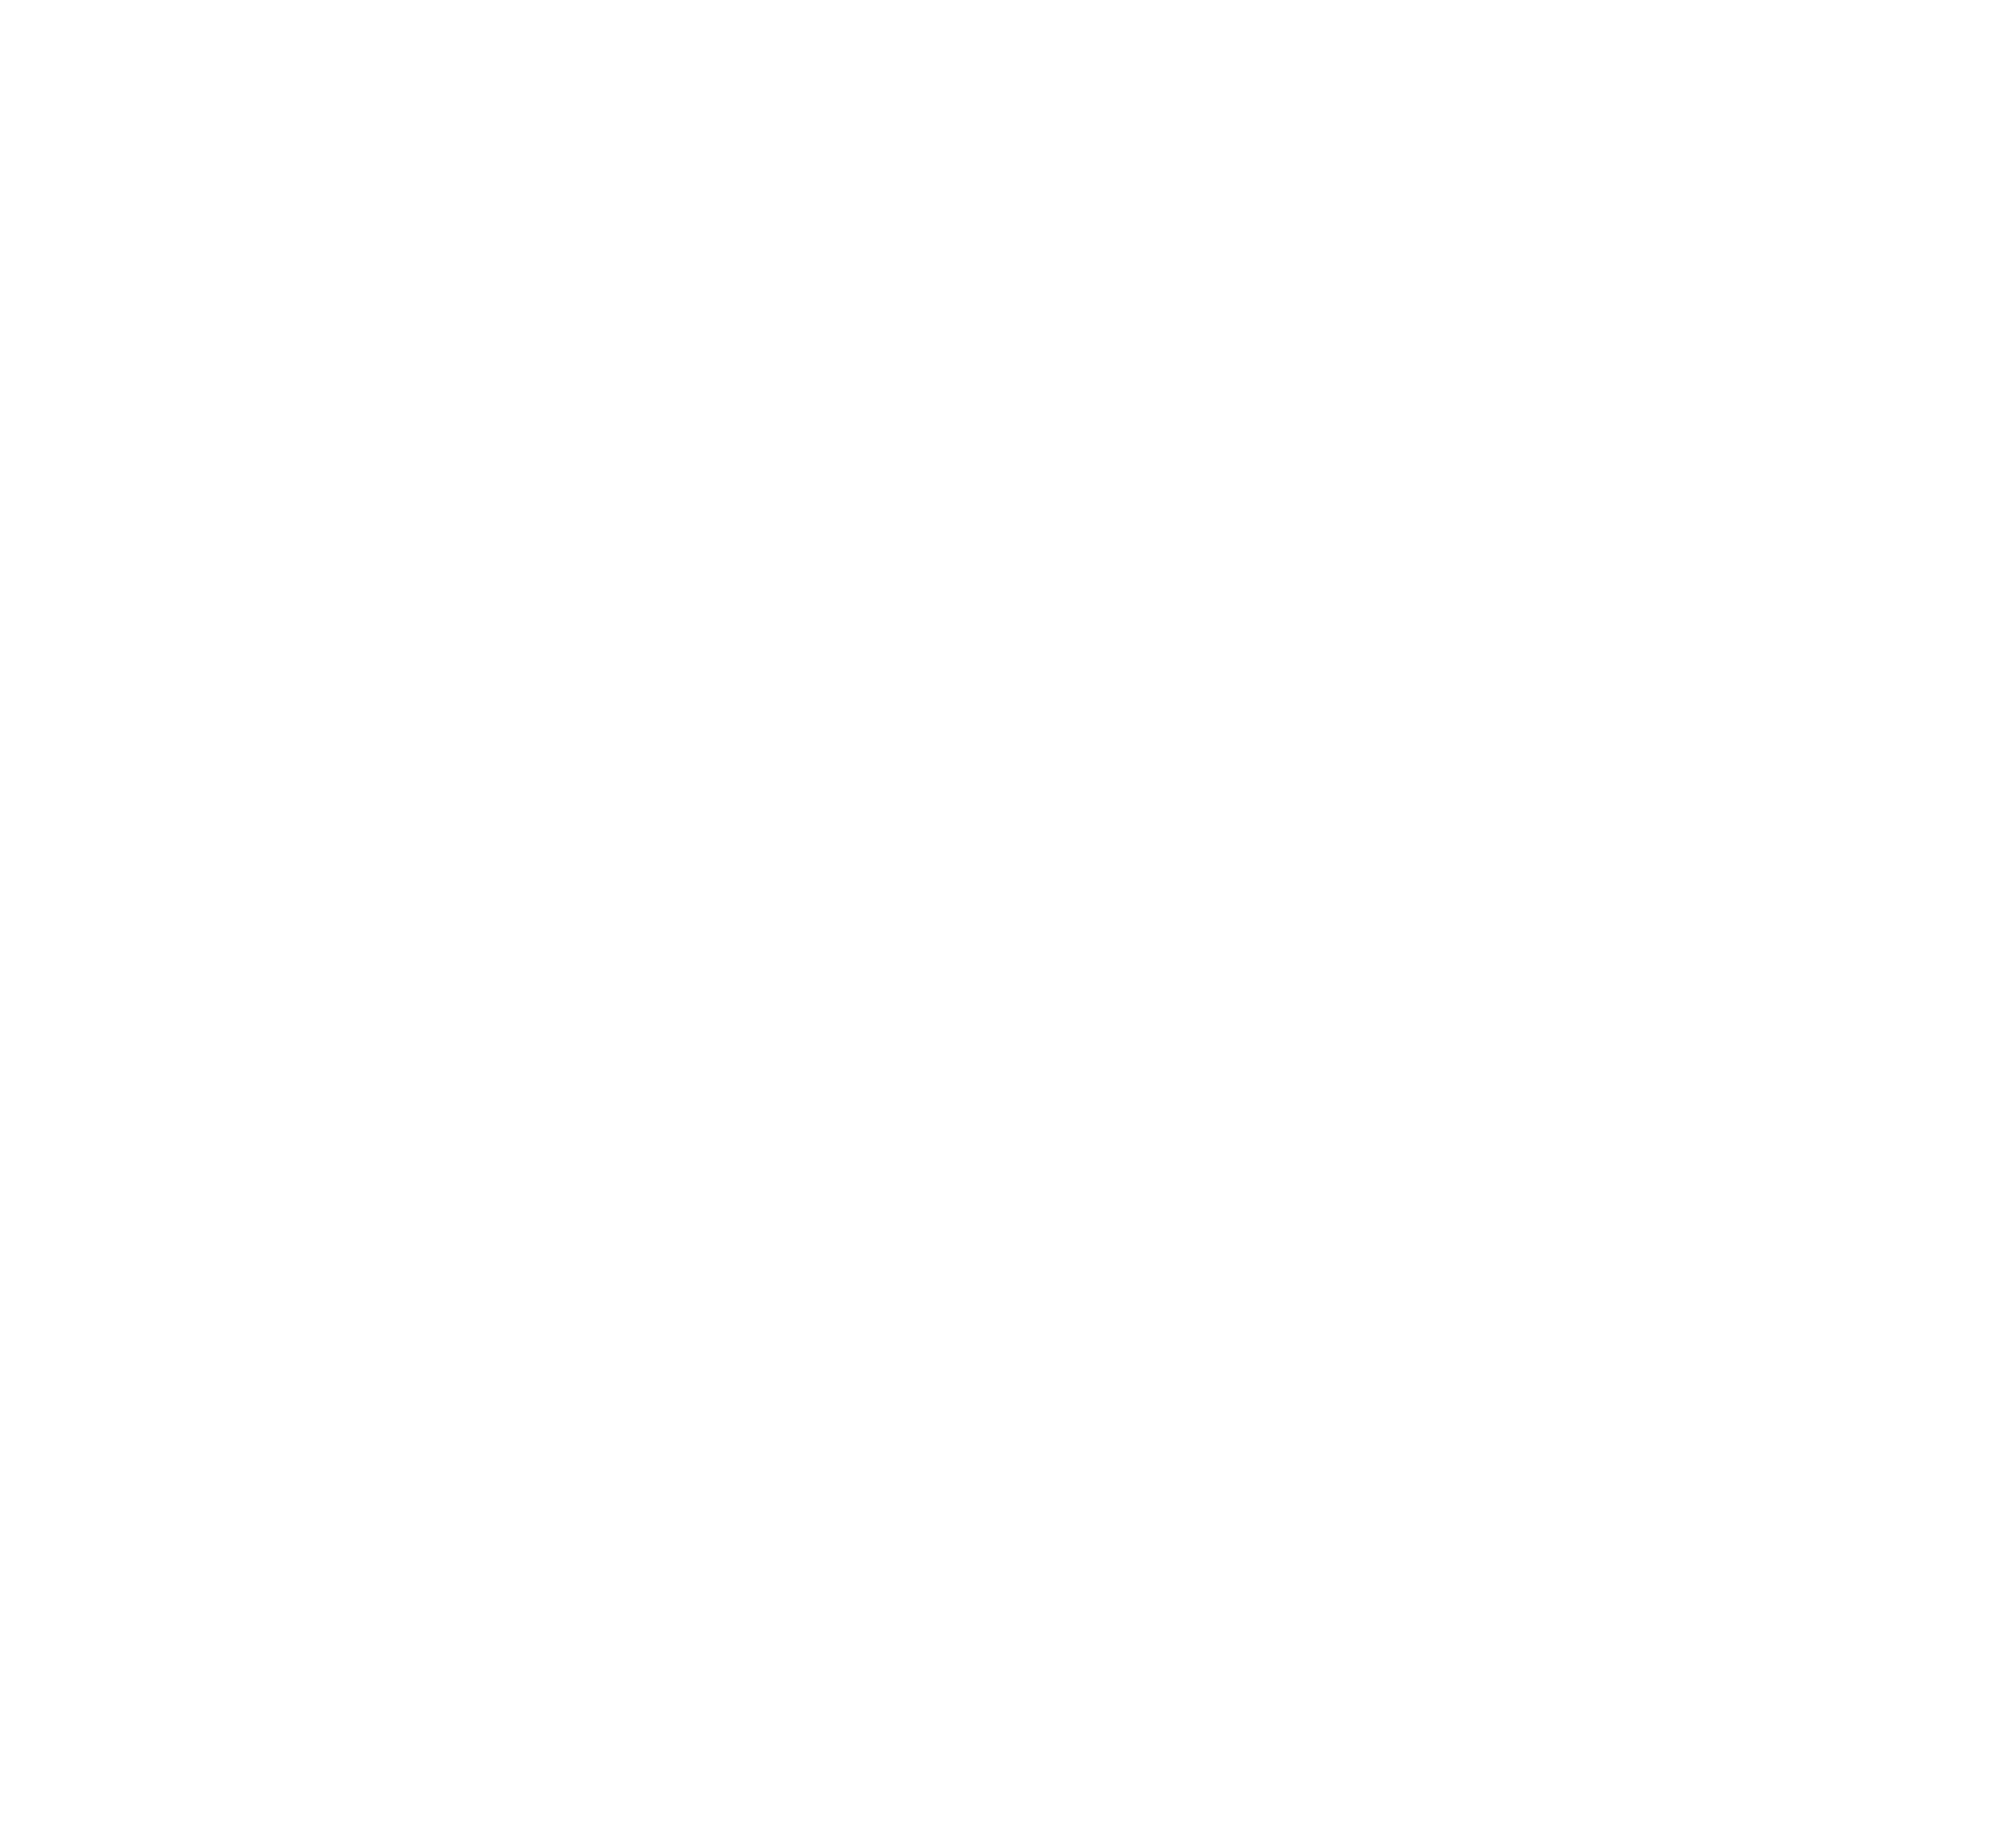 sense by SUZUKI IRON WORKS